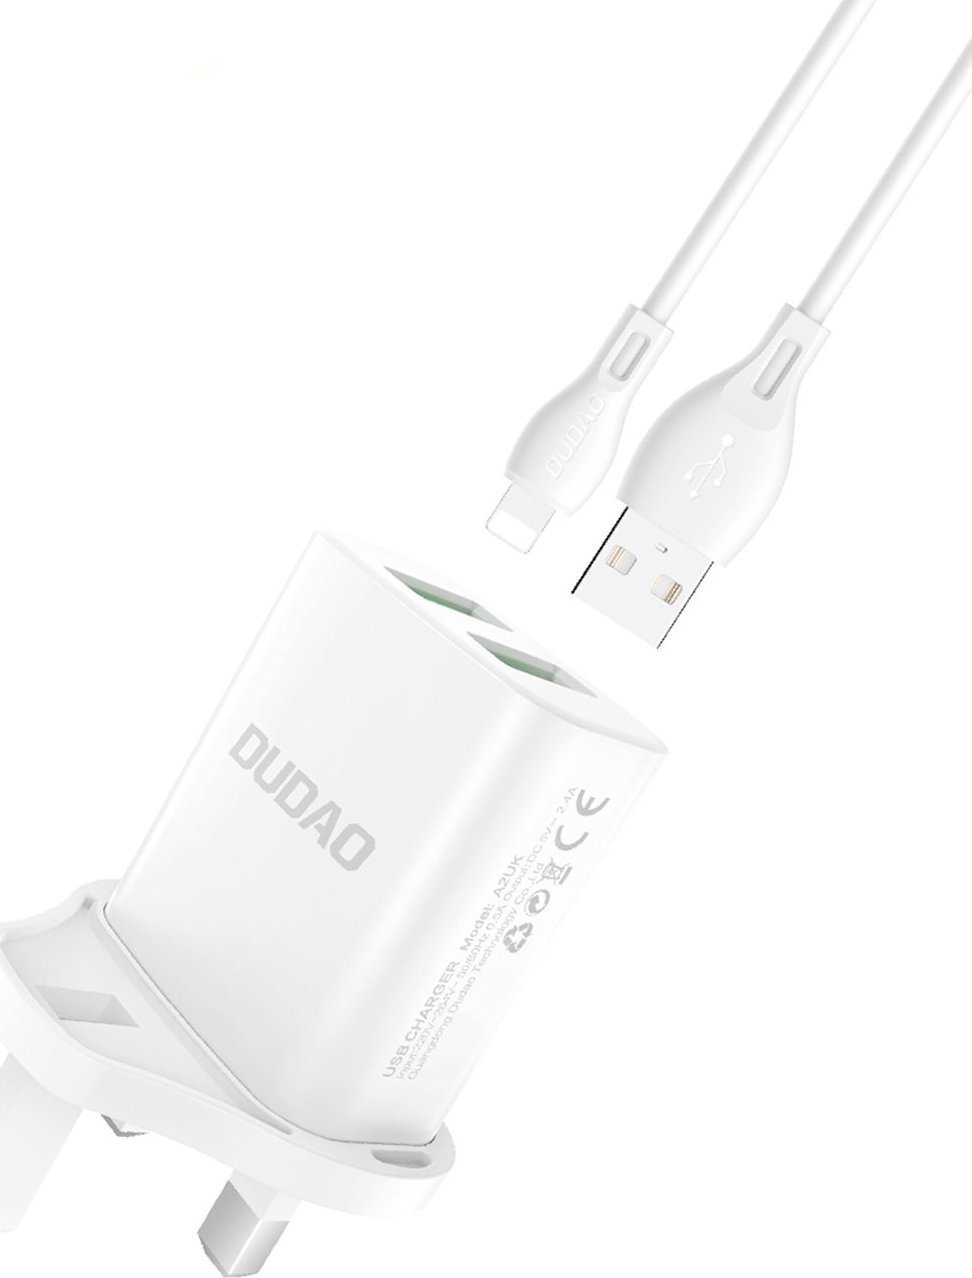 Ładowarka Dudao Dudao ładowarka sieciowa wtyczka UK (Wielka Brytania) 2xUSB-A 2.4A biała + kabel USB-A - Lightning biały